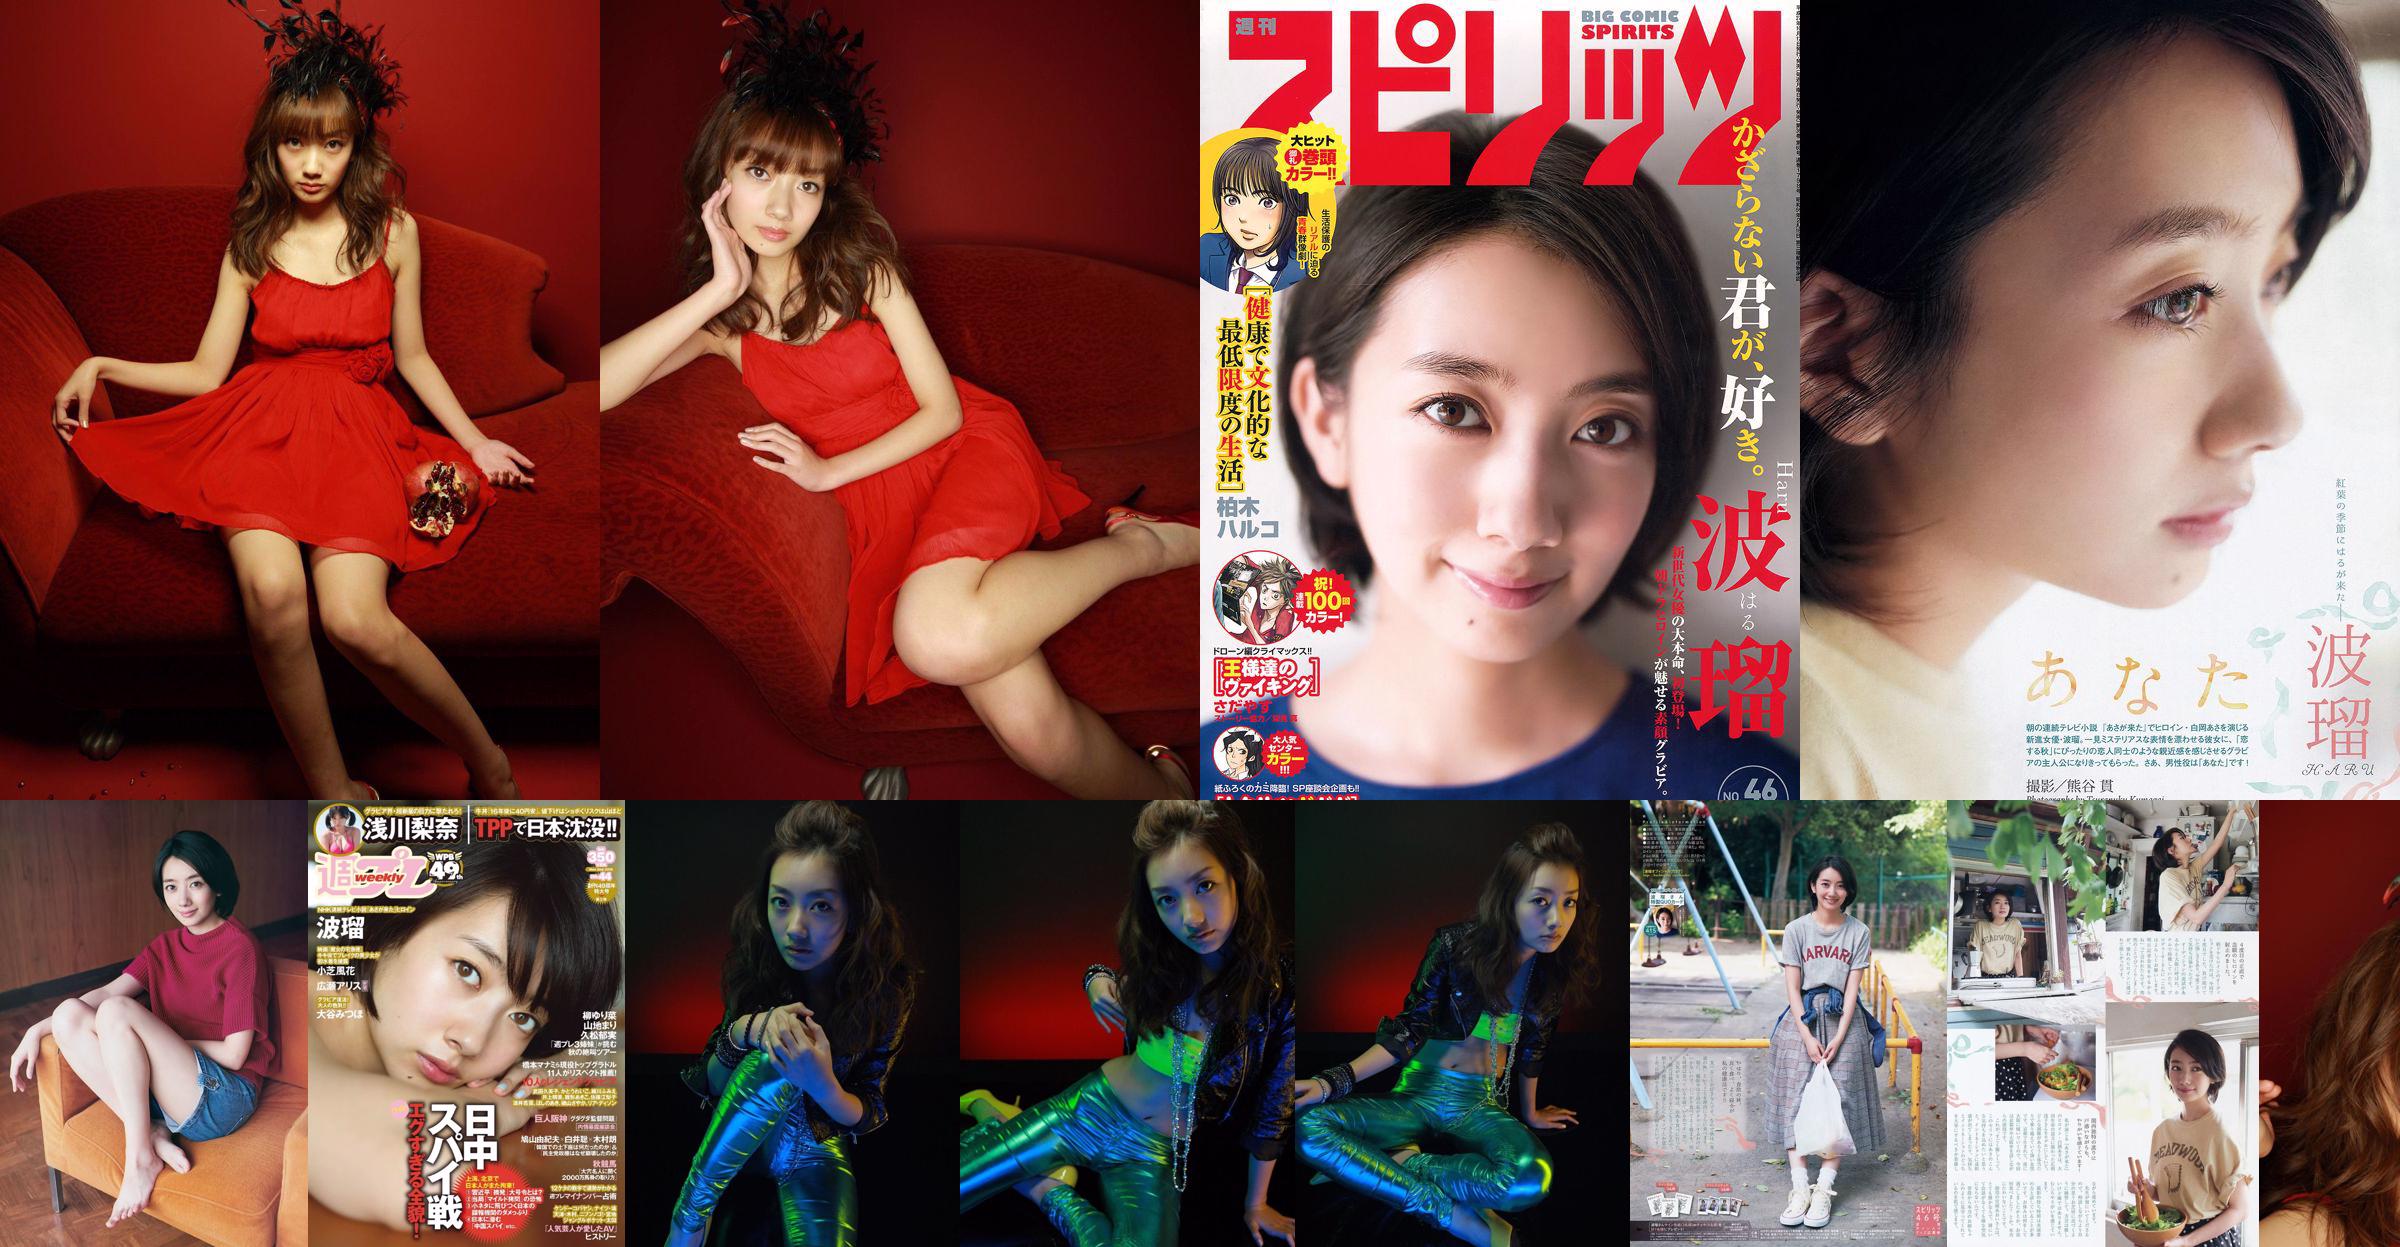 Haru, Asakawa Rina, Xiaozhi Fenghua, , Otani [Weekly Playboy] 2015 No.44 Majalah Foto No.97c0c2 Halaman 5